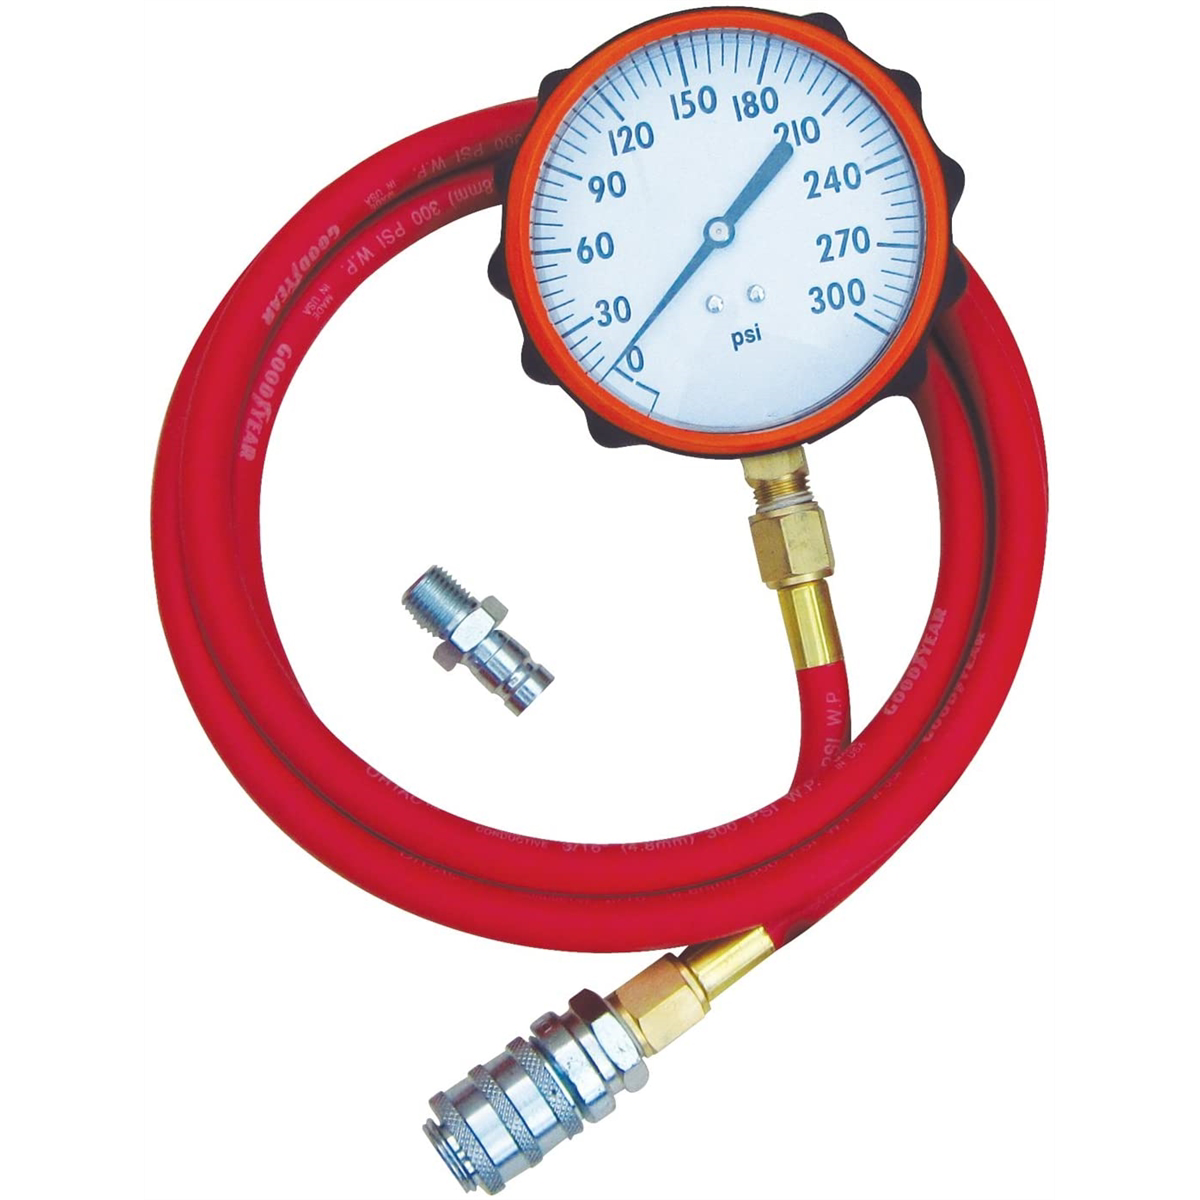 Fuel System Pressure Test Gauge - Compucheck